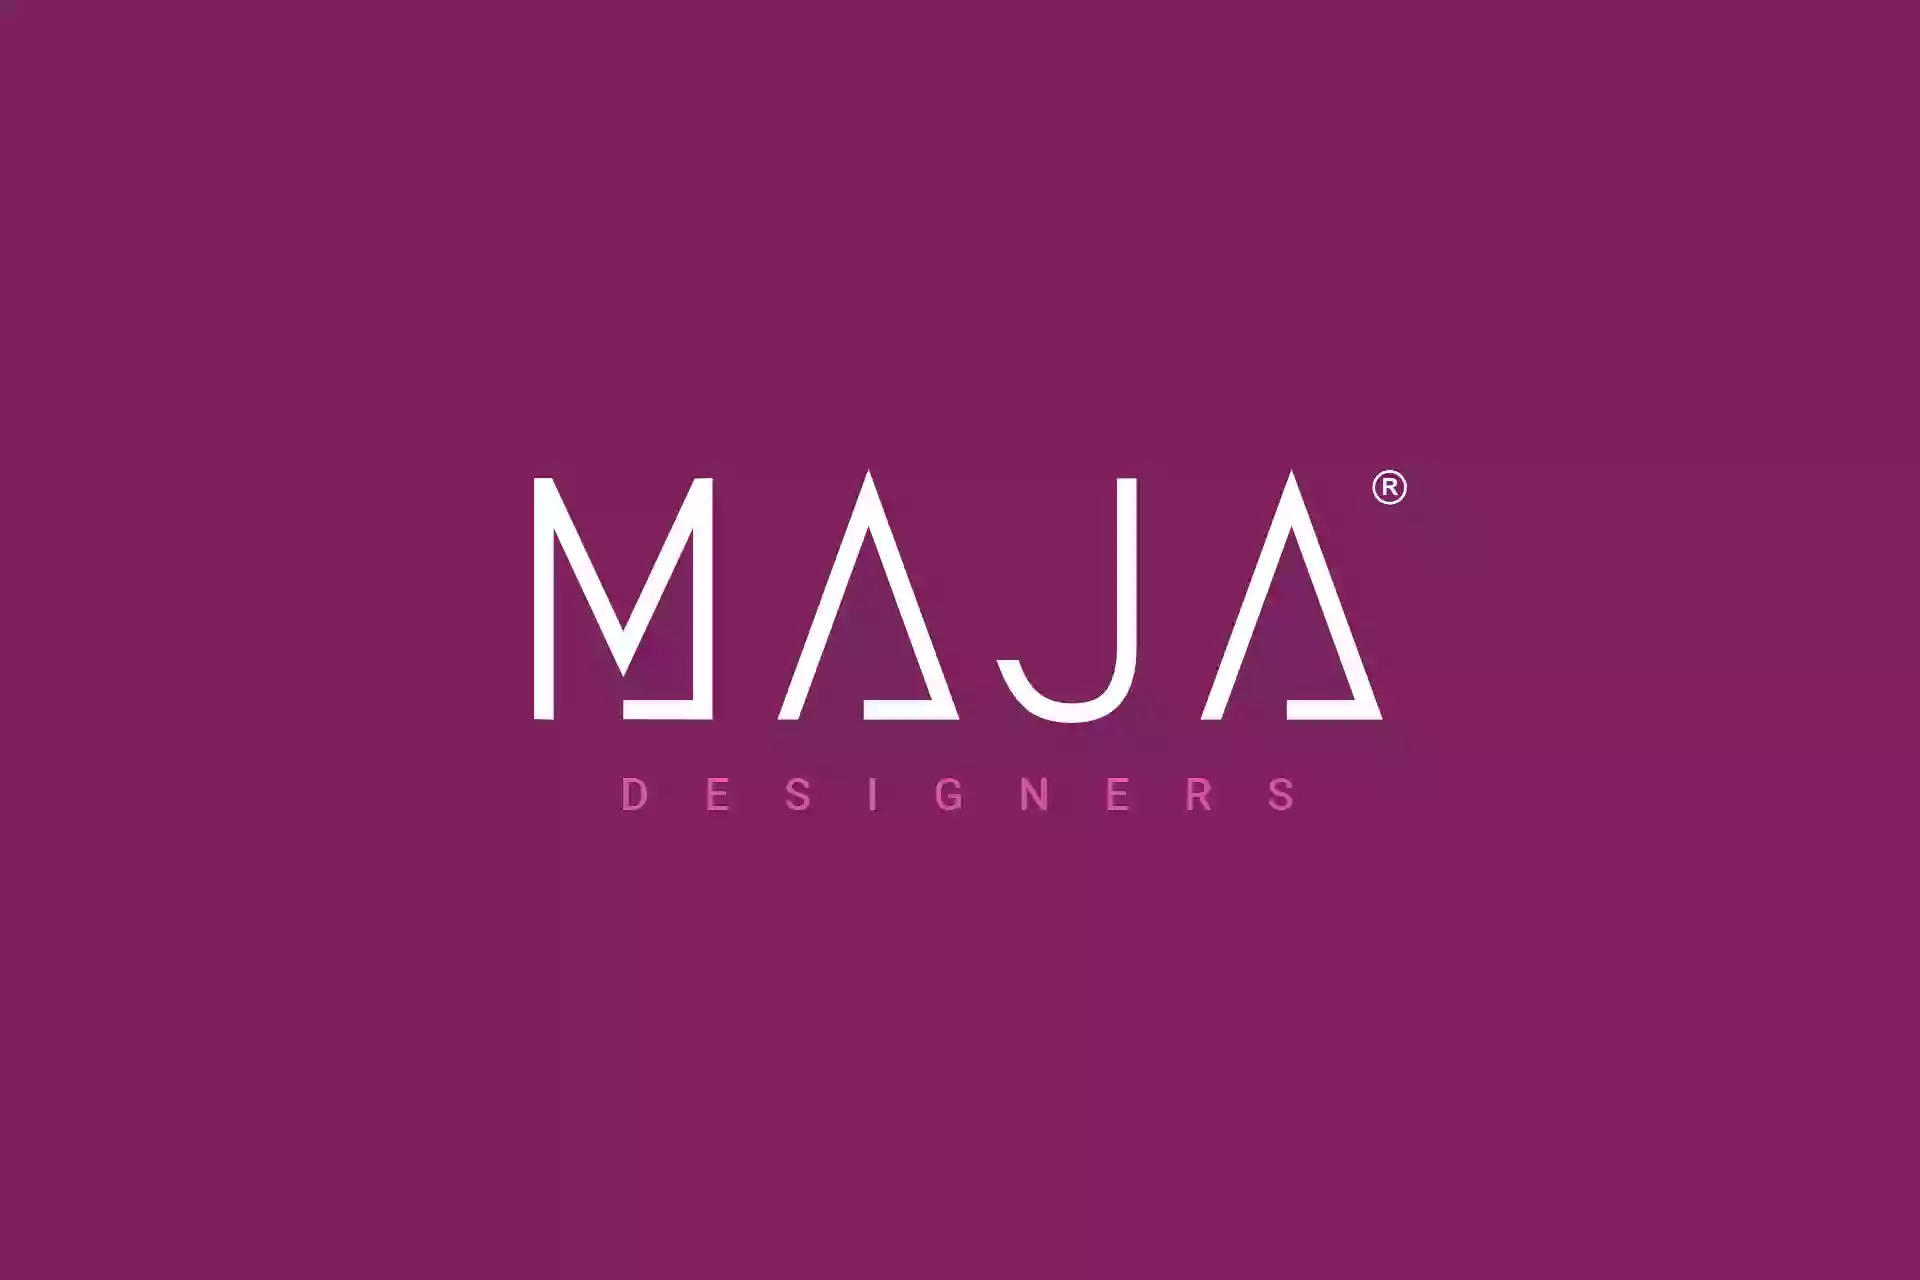 Maja Designers